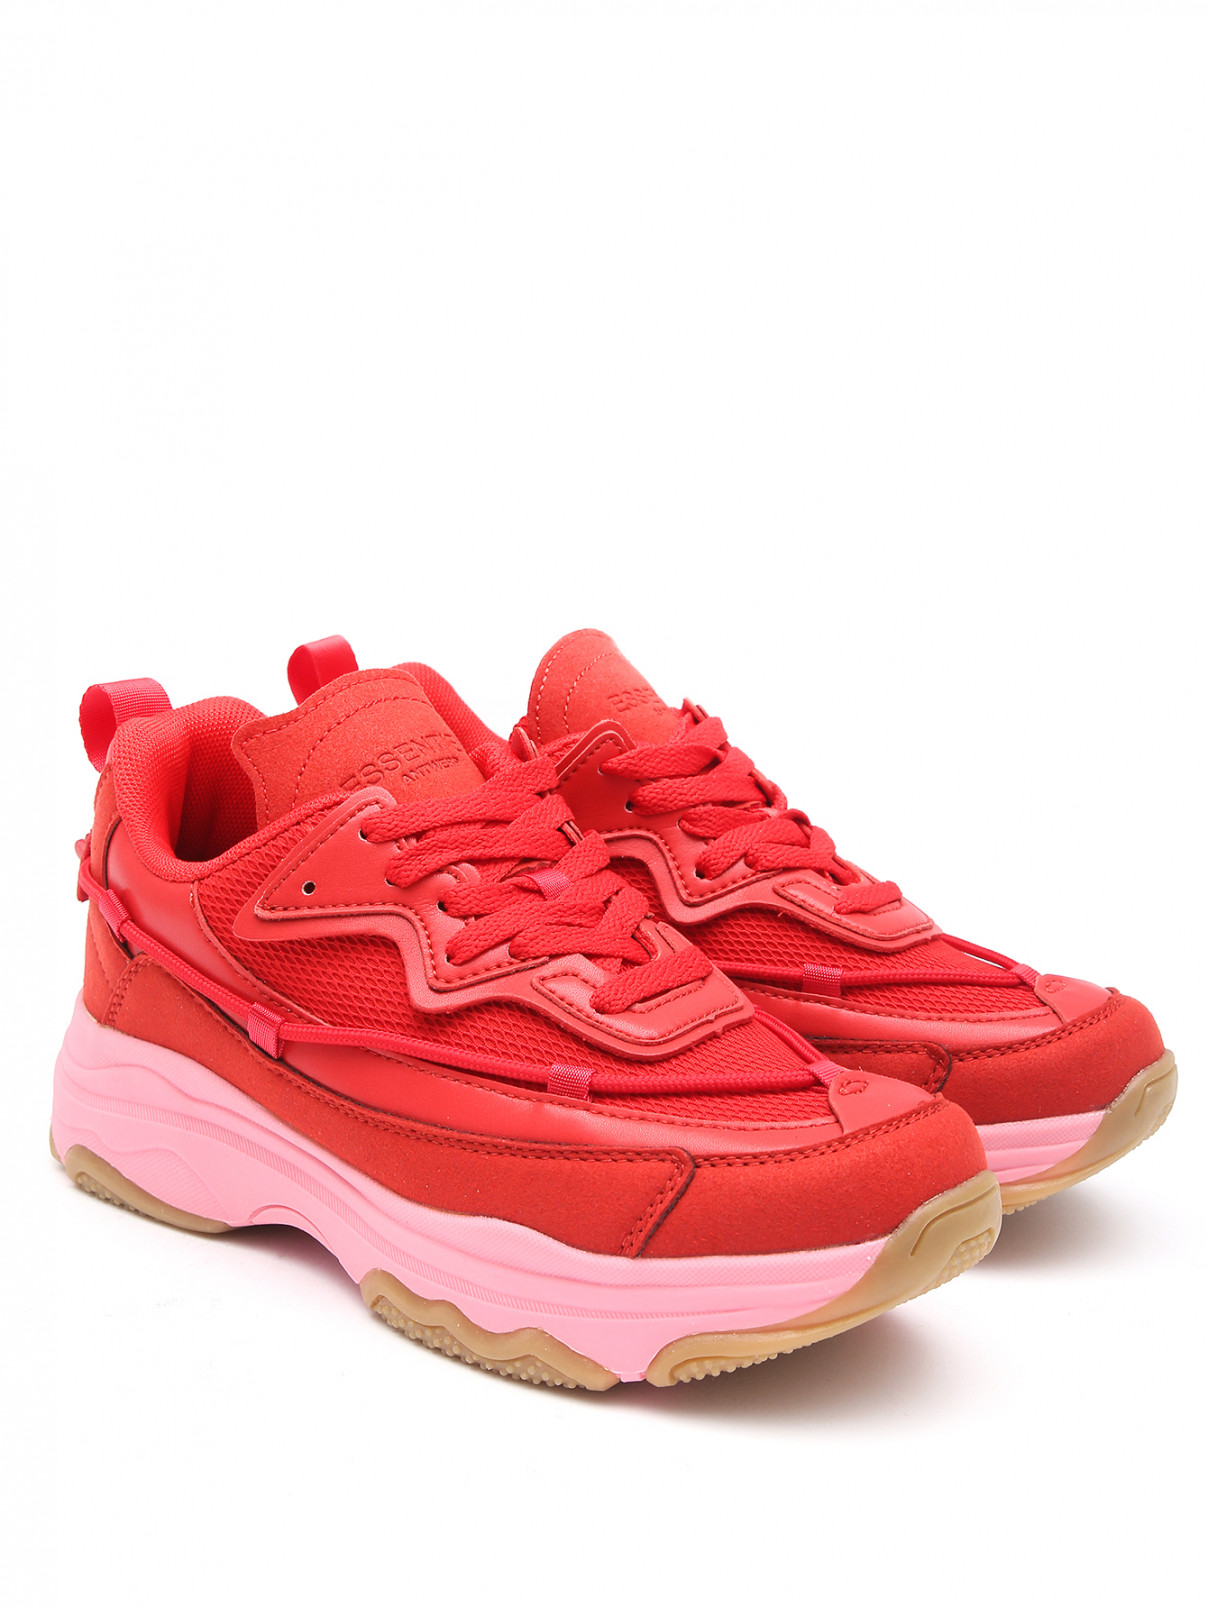 Комбинированные кроссовки на контрастной подошве Essentiel Antwerp  –  Общий вид  – Цвет:  Красный